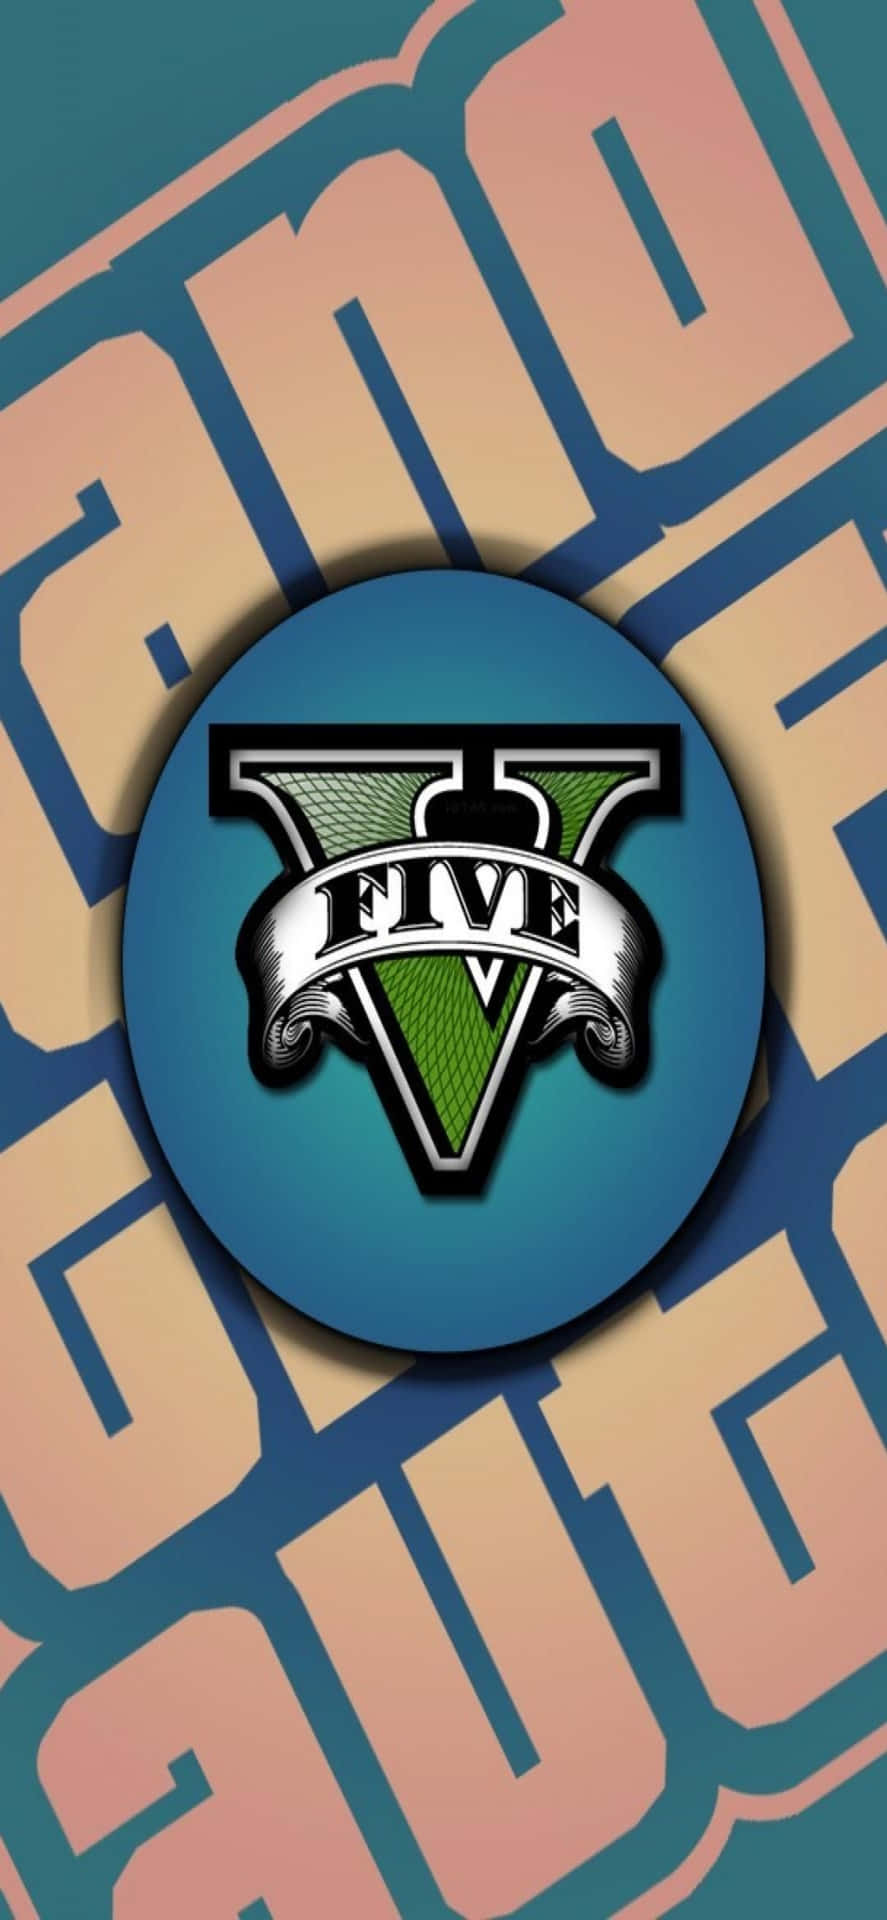 Logosu Sfondo Di Grand Theft Auto V Su Iphone X